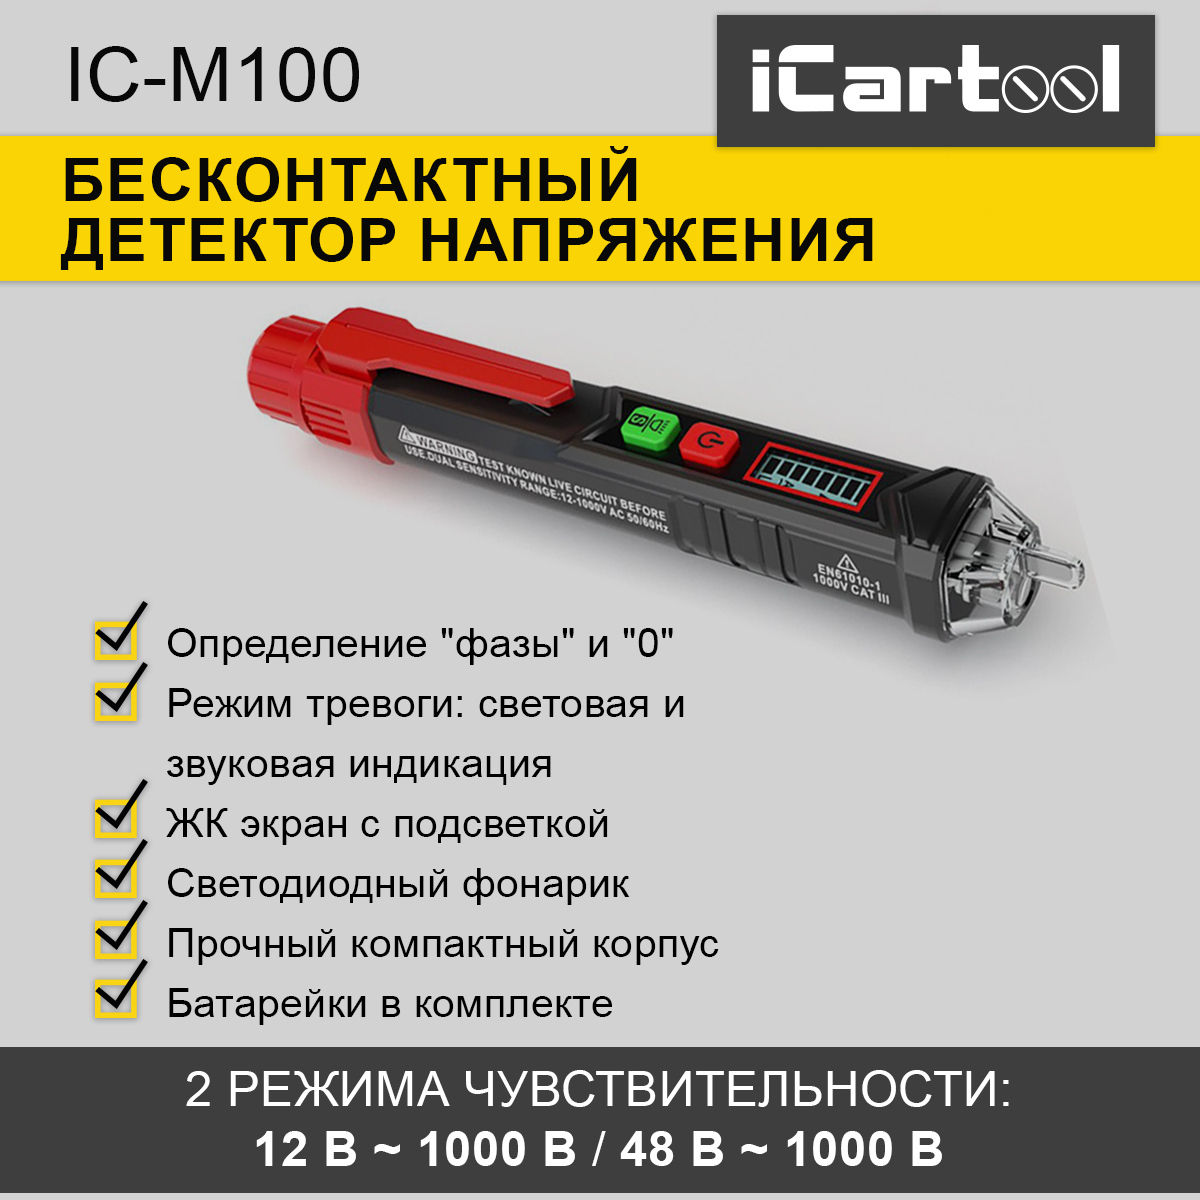 Бесконтактный детектор напряжения iCartool IC-M100 фонарик свет звук